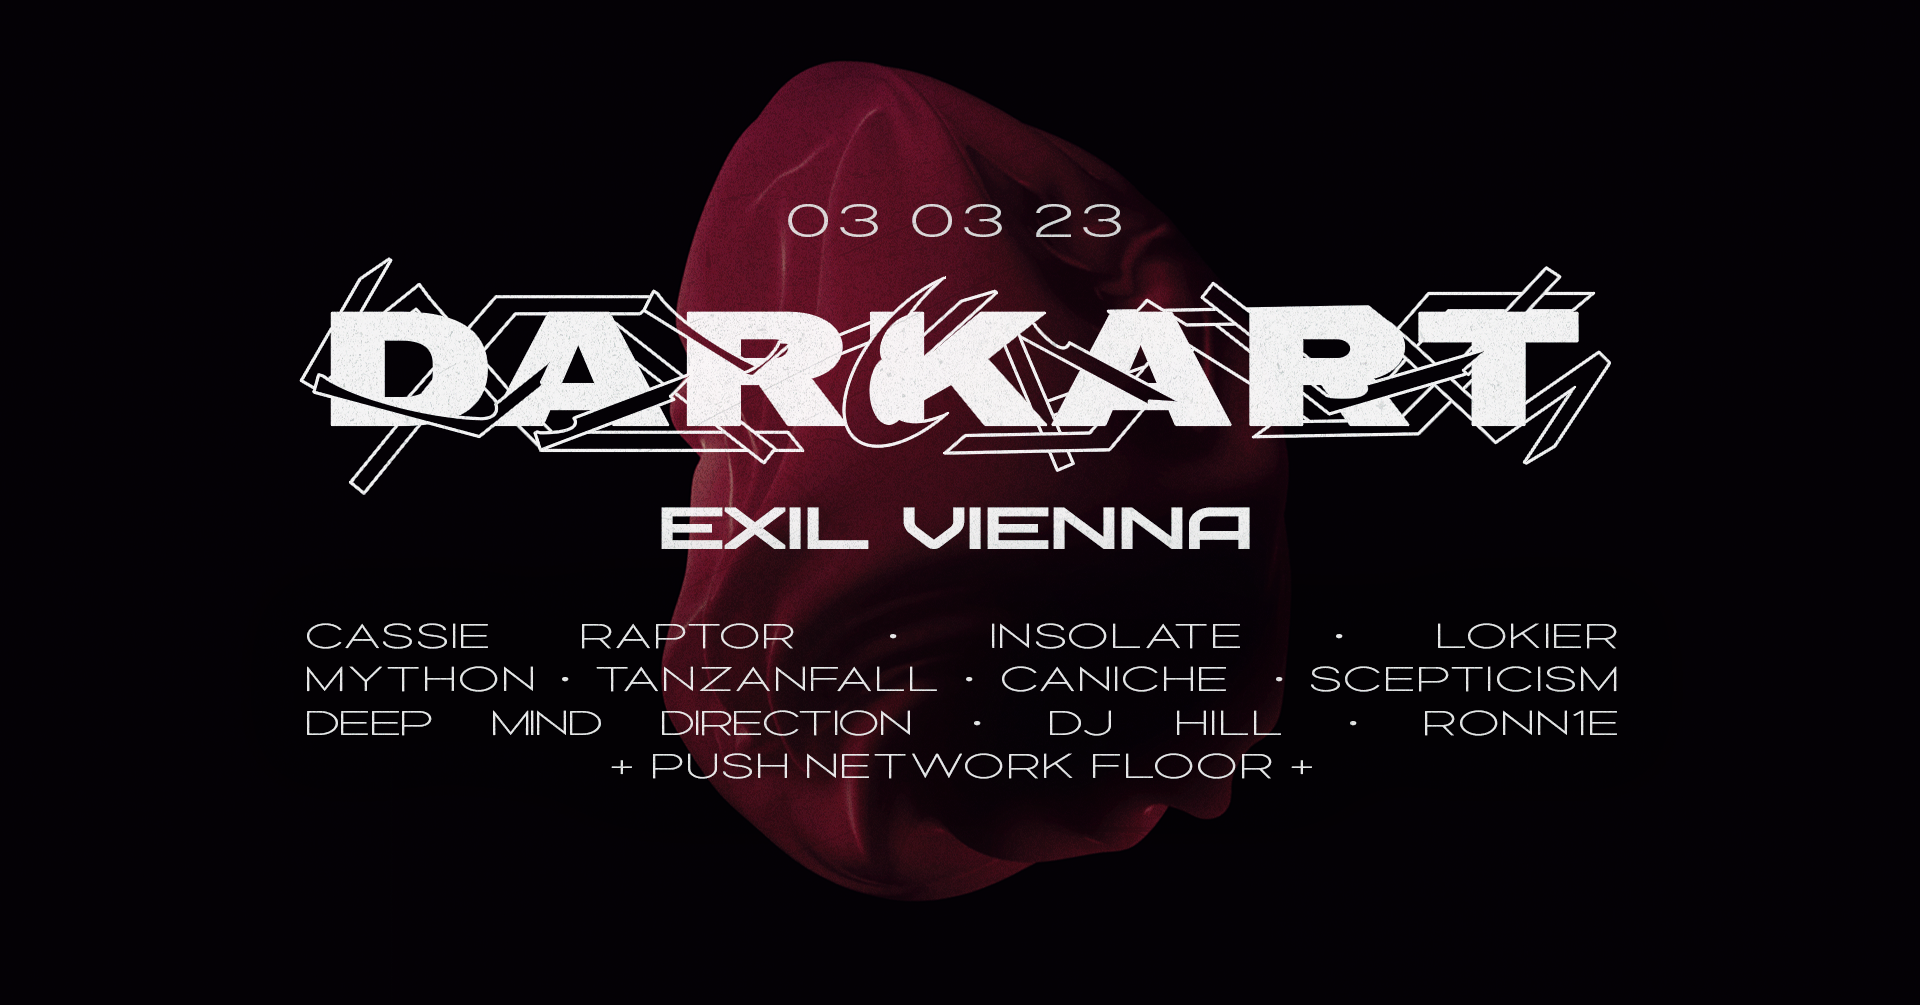 Darkart Nacht w/Cassie Raptor, Lokier, Insolate am 3. March 2023 @ EXIL.